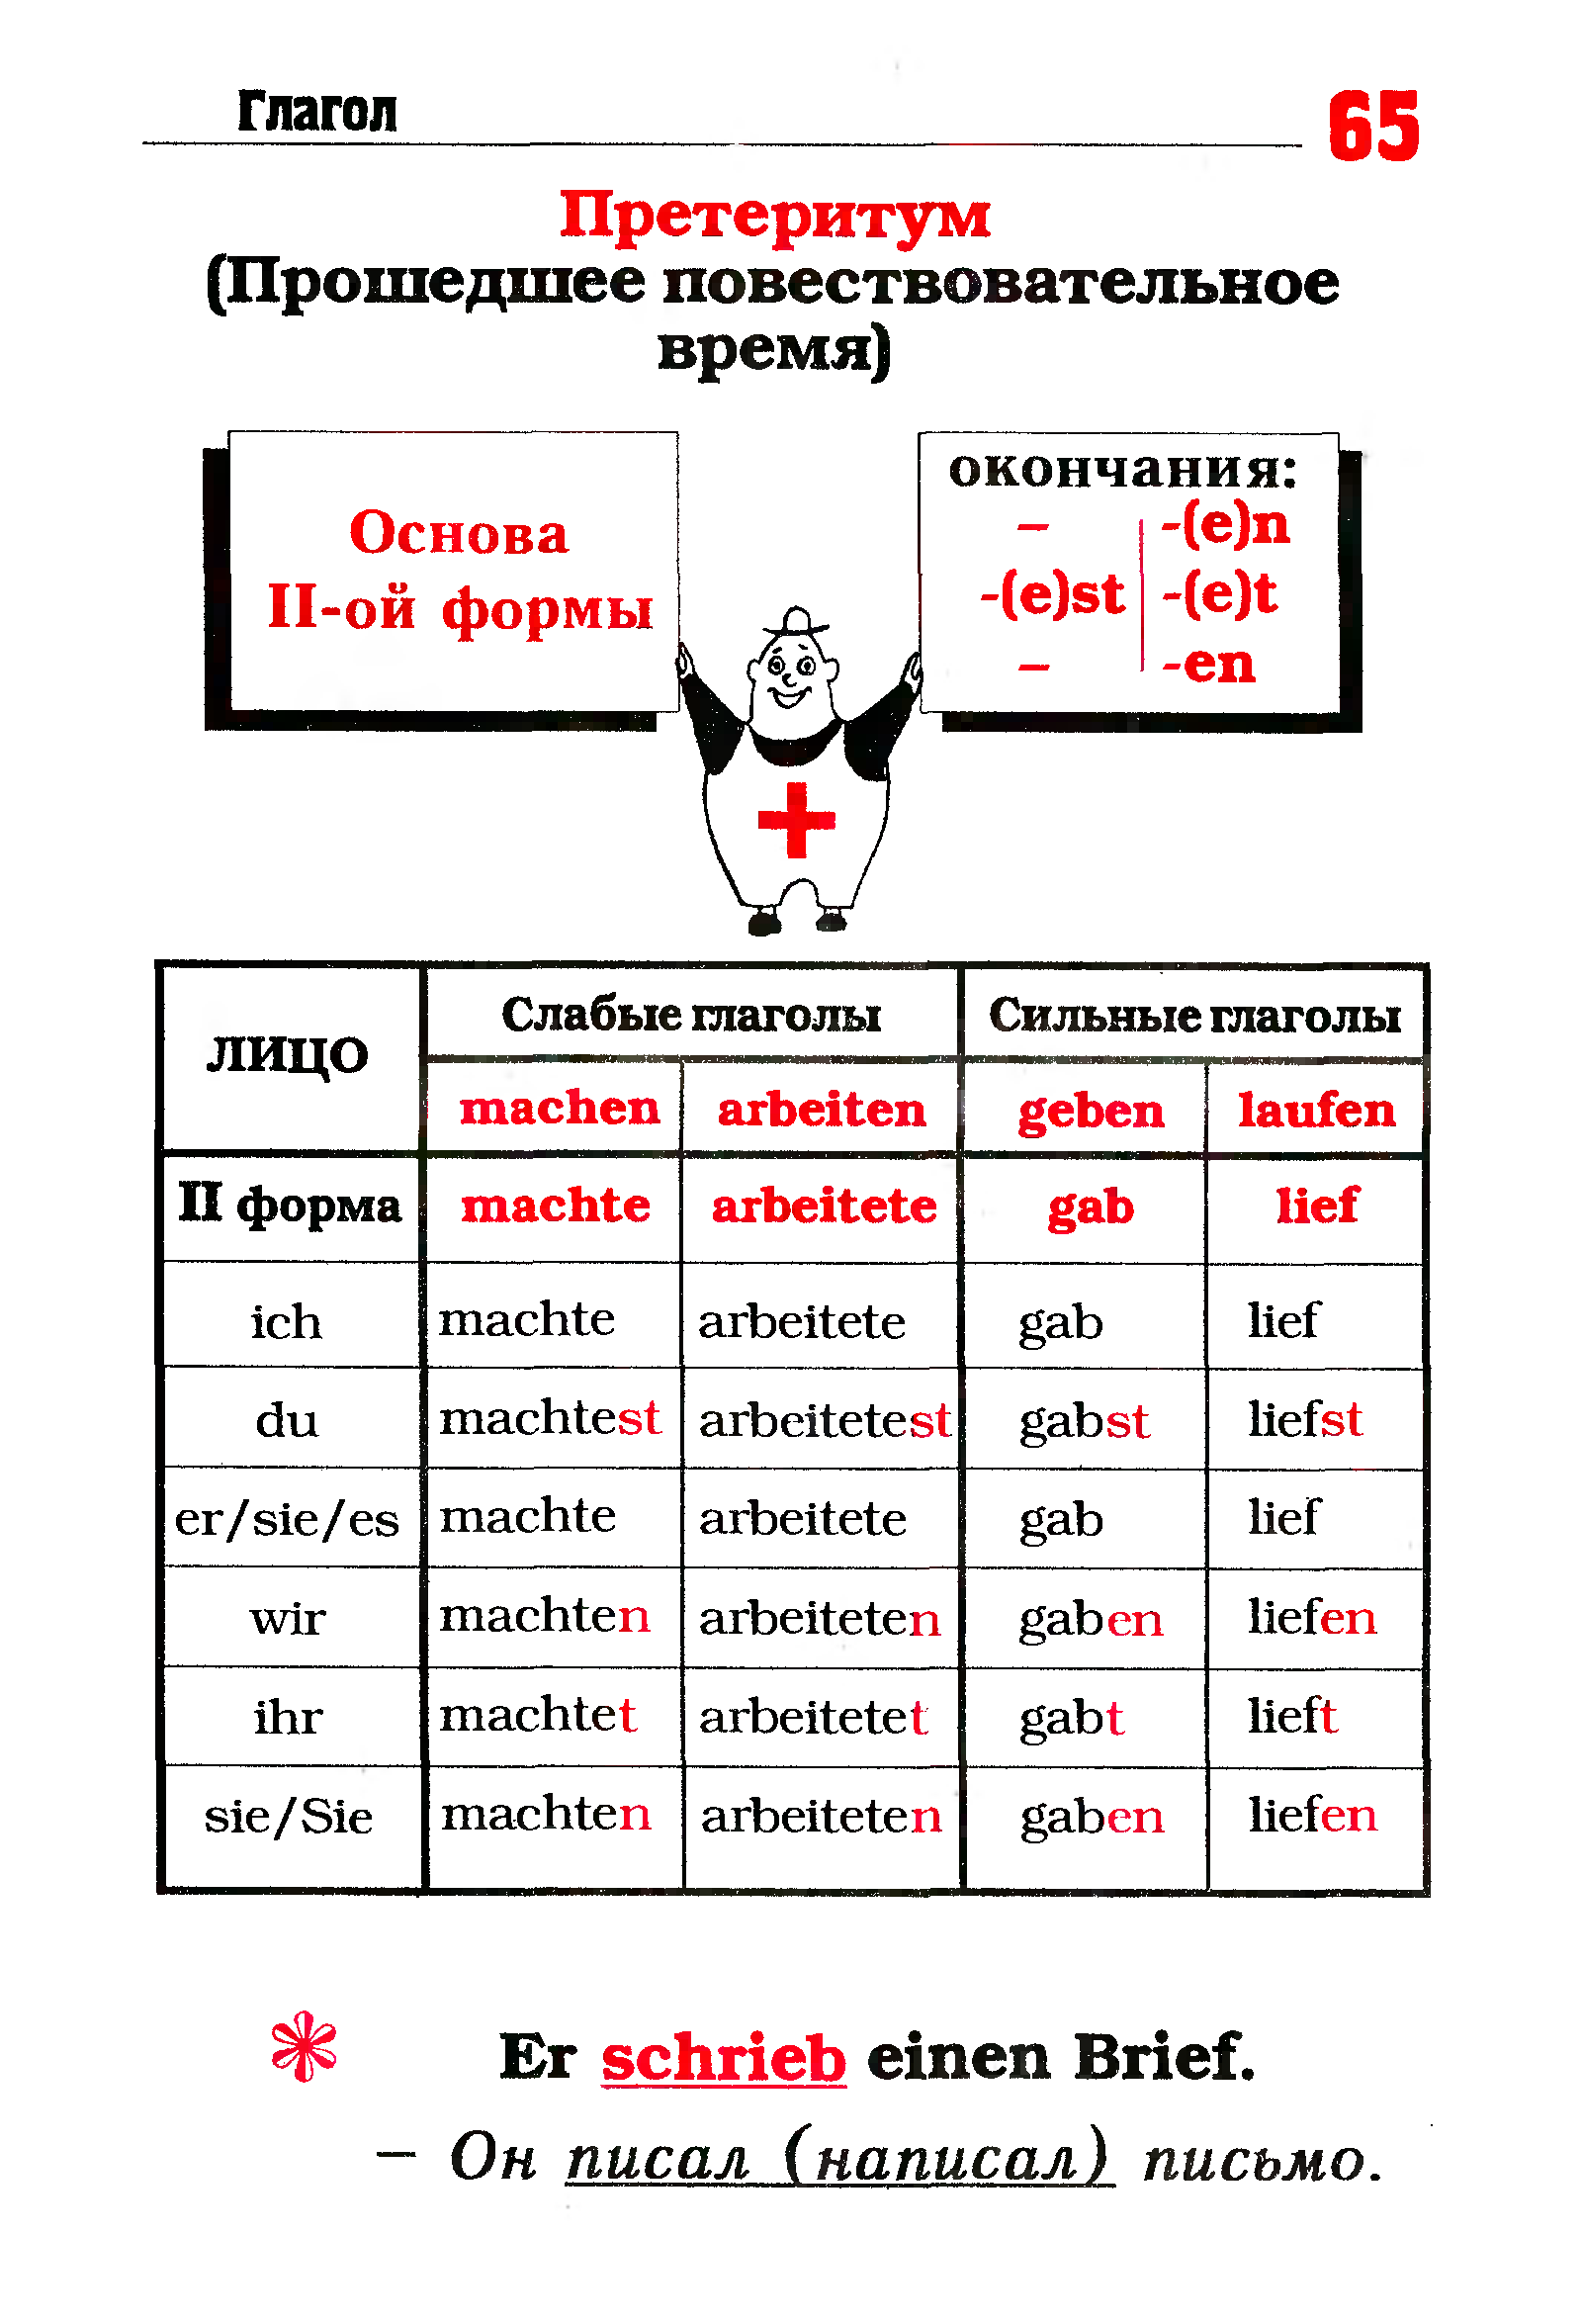 Deutsche grammatik. Вся грамматика немецкого языка в таблицах. Грамматика немецкого языка для начинающих в таблицах. Немецкая грамматика в таблицах. Немецкая грамматика в таблицах и схемах.